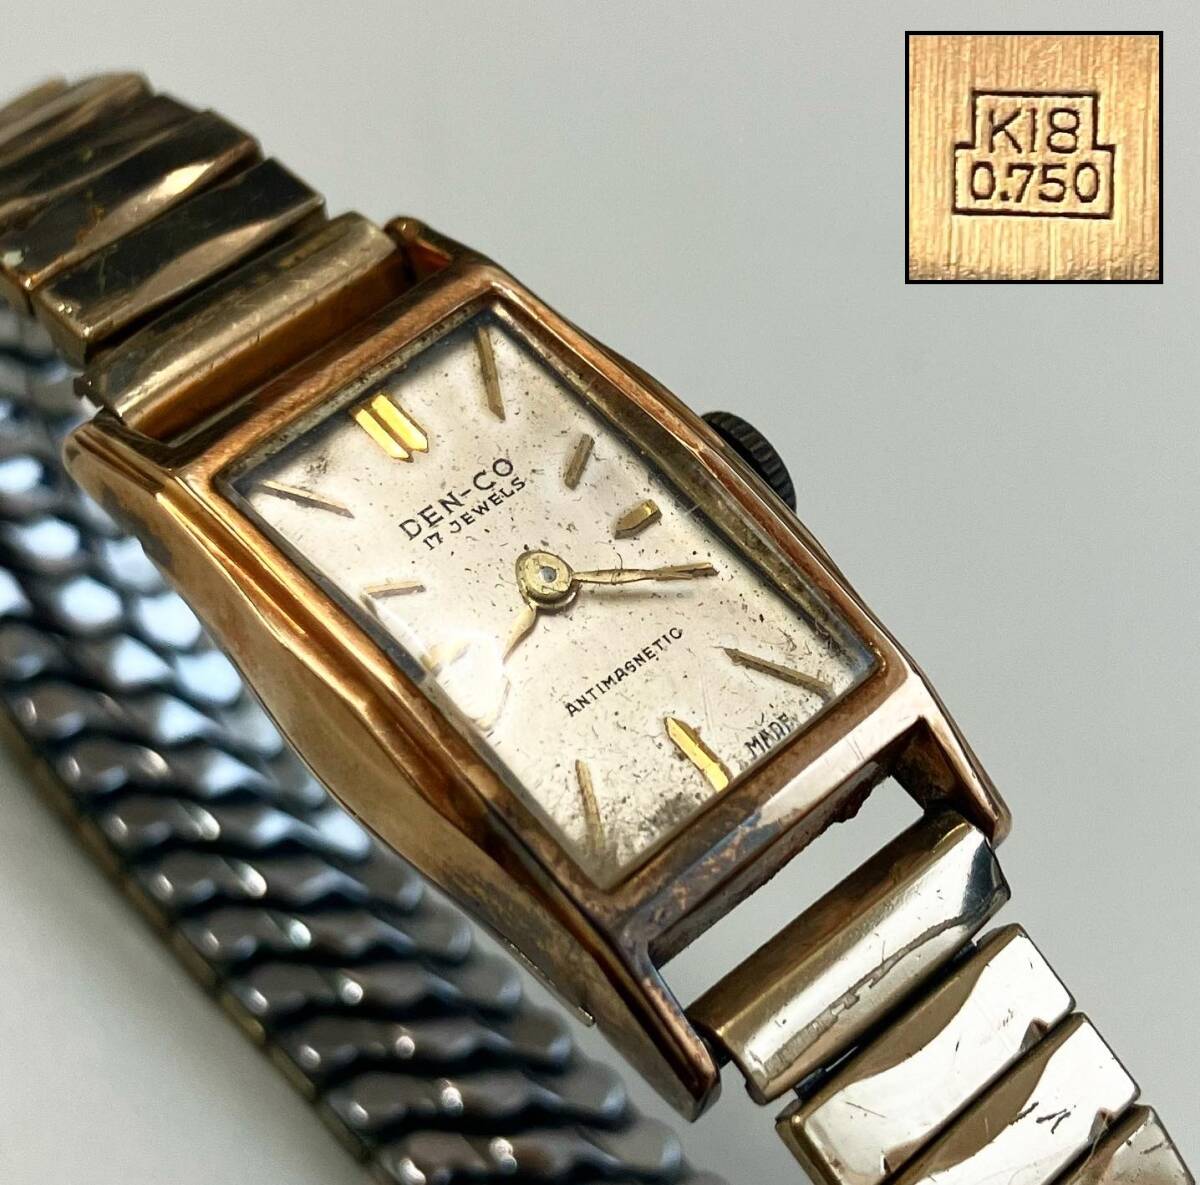  Kyoto ⑥ чистое золото часы женский DEN-CO K18 750 печать механический завод передвижной товар 17 камень античный 21.5g